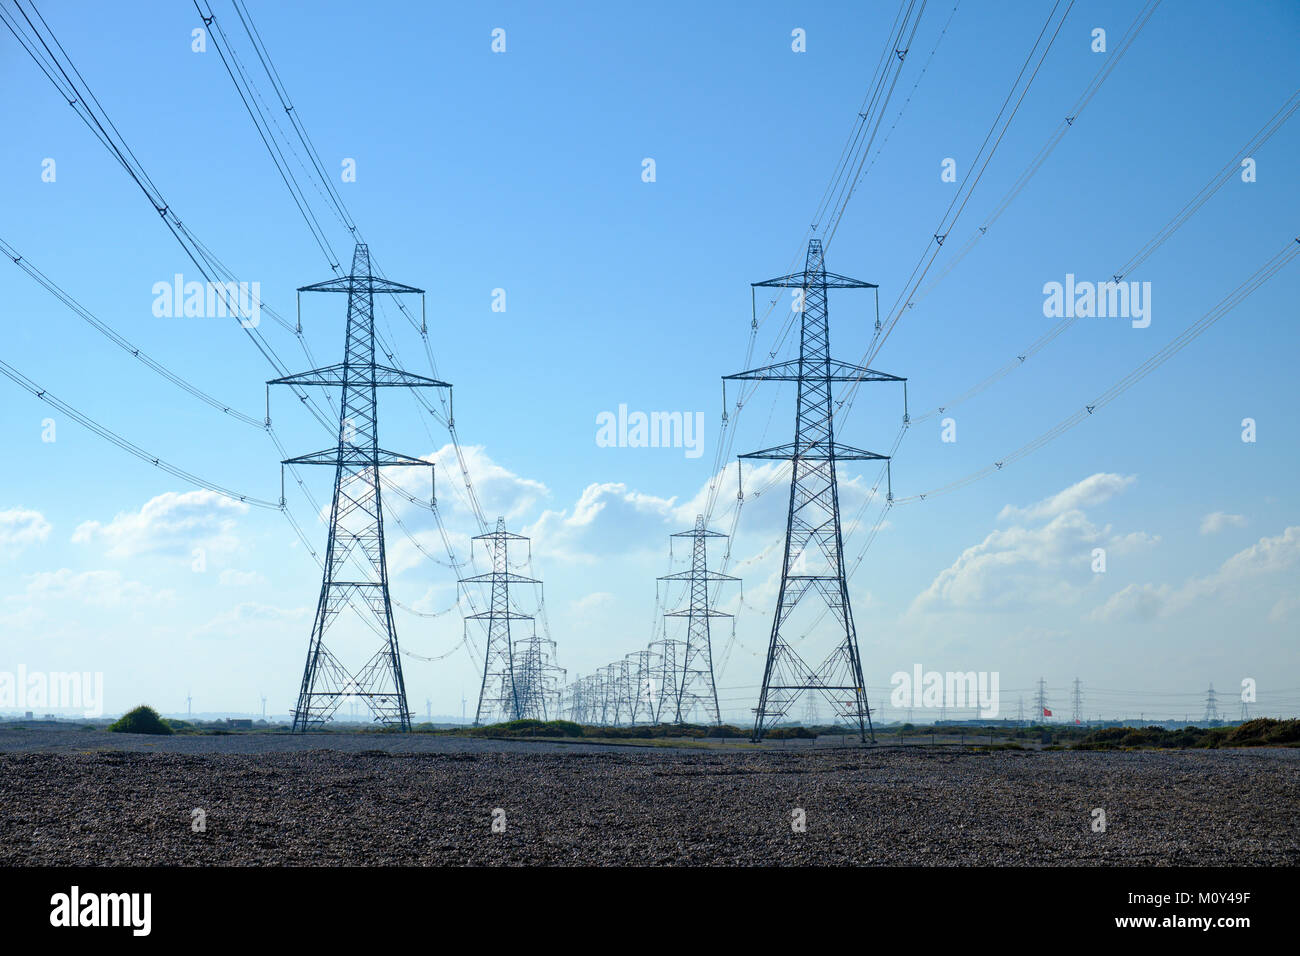 Filas de torres eléctricas (transmisión/torres eléctricas) distribuyen electricidad en el sistema interconectado nacional de energía nuclear de Dungeness, Kent, Inglaterra, Reino Unido. Foto de stock